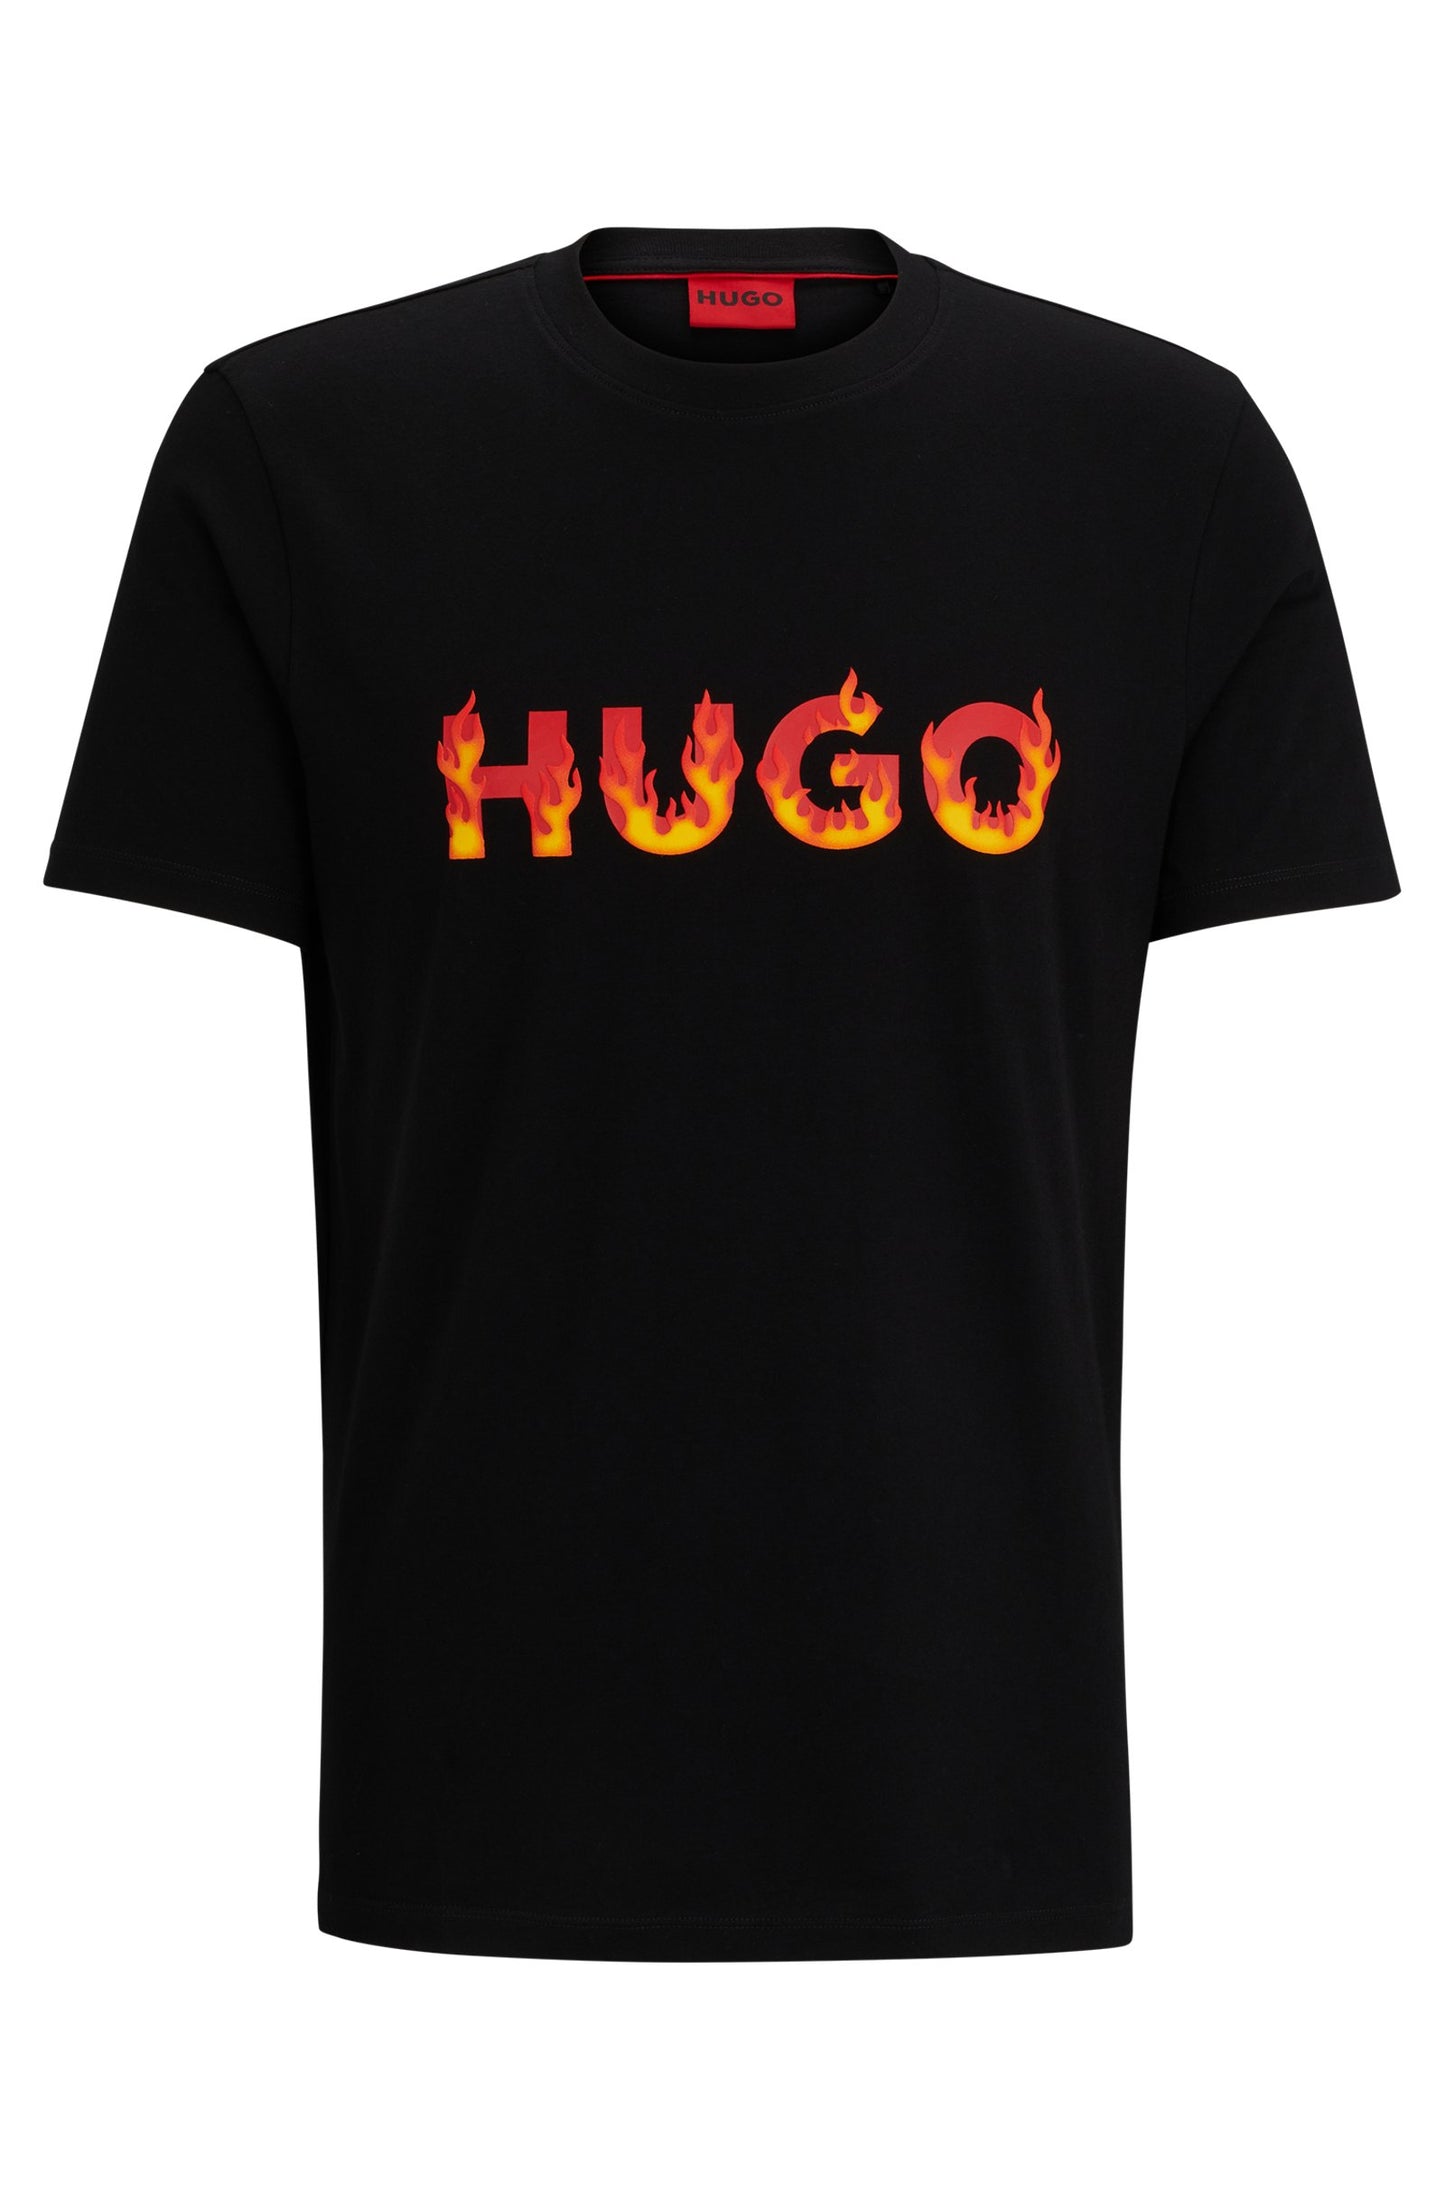 Camiseta HUGO - 50504542 001